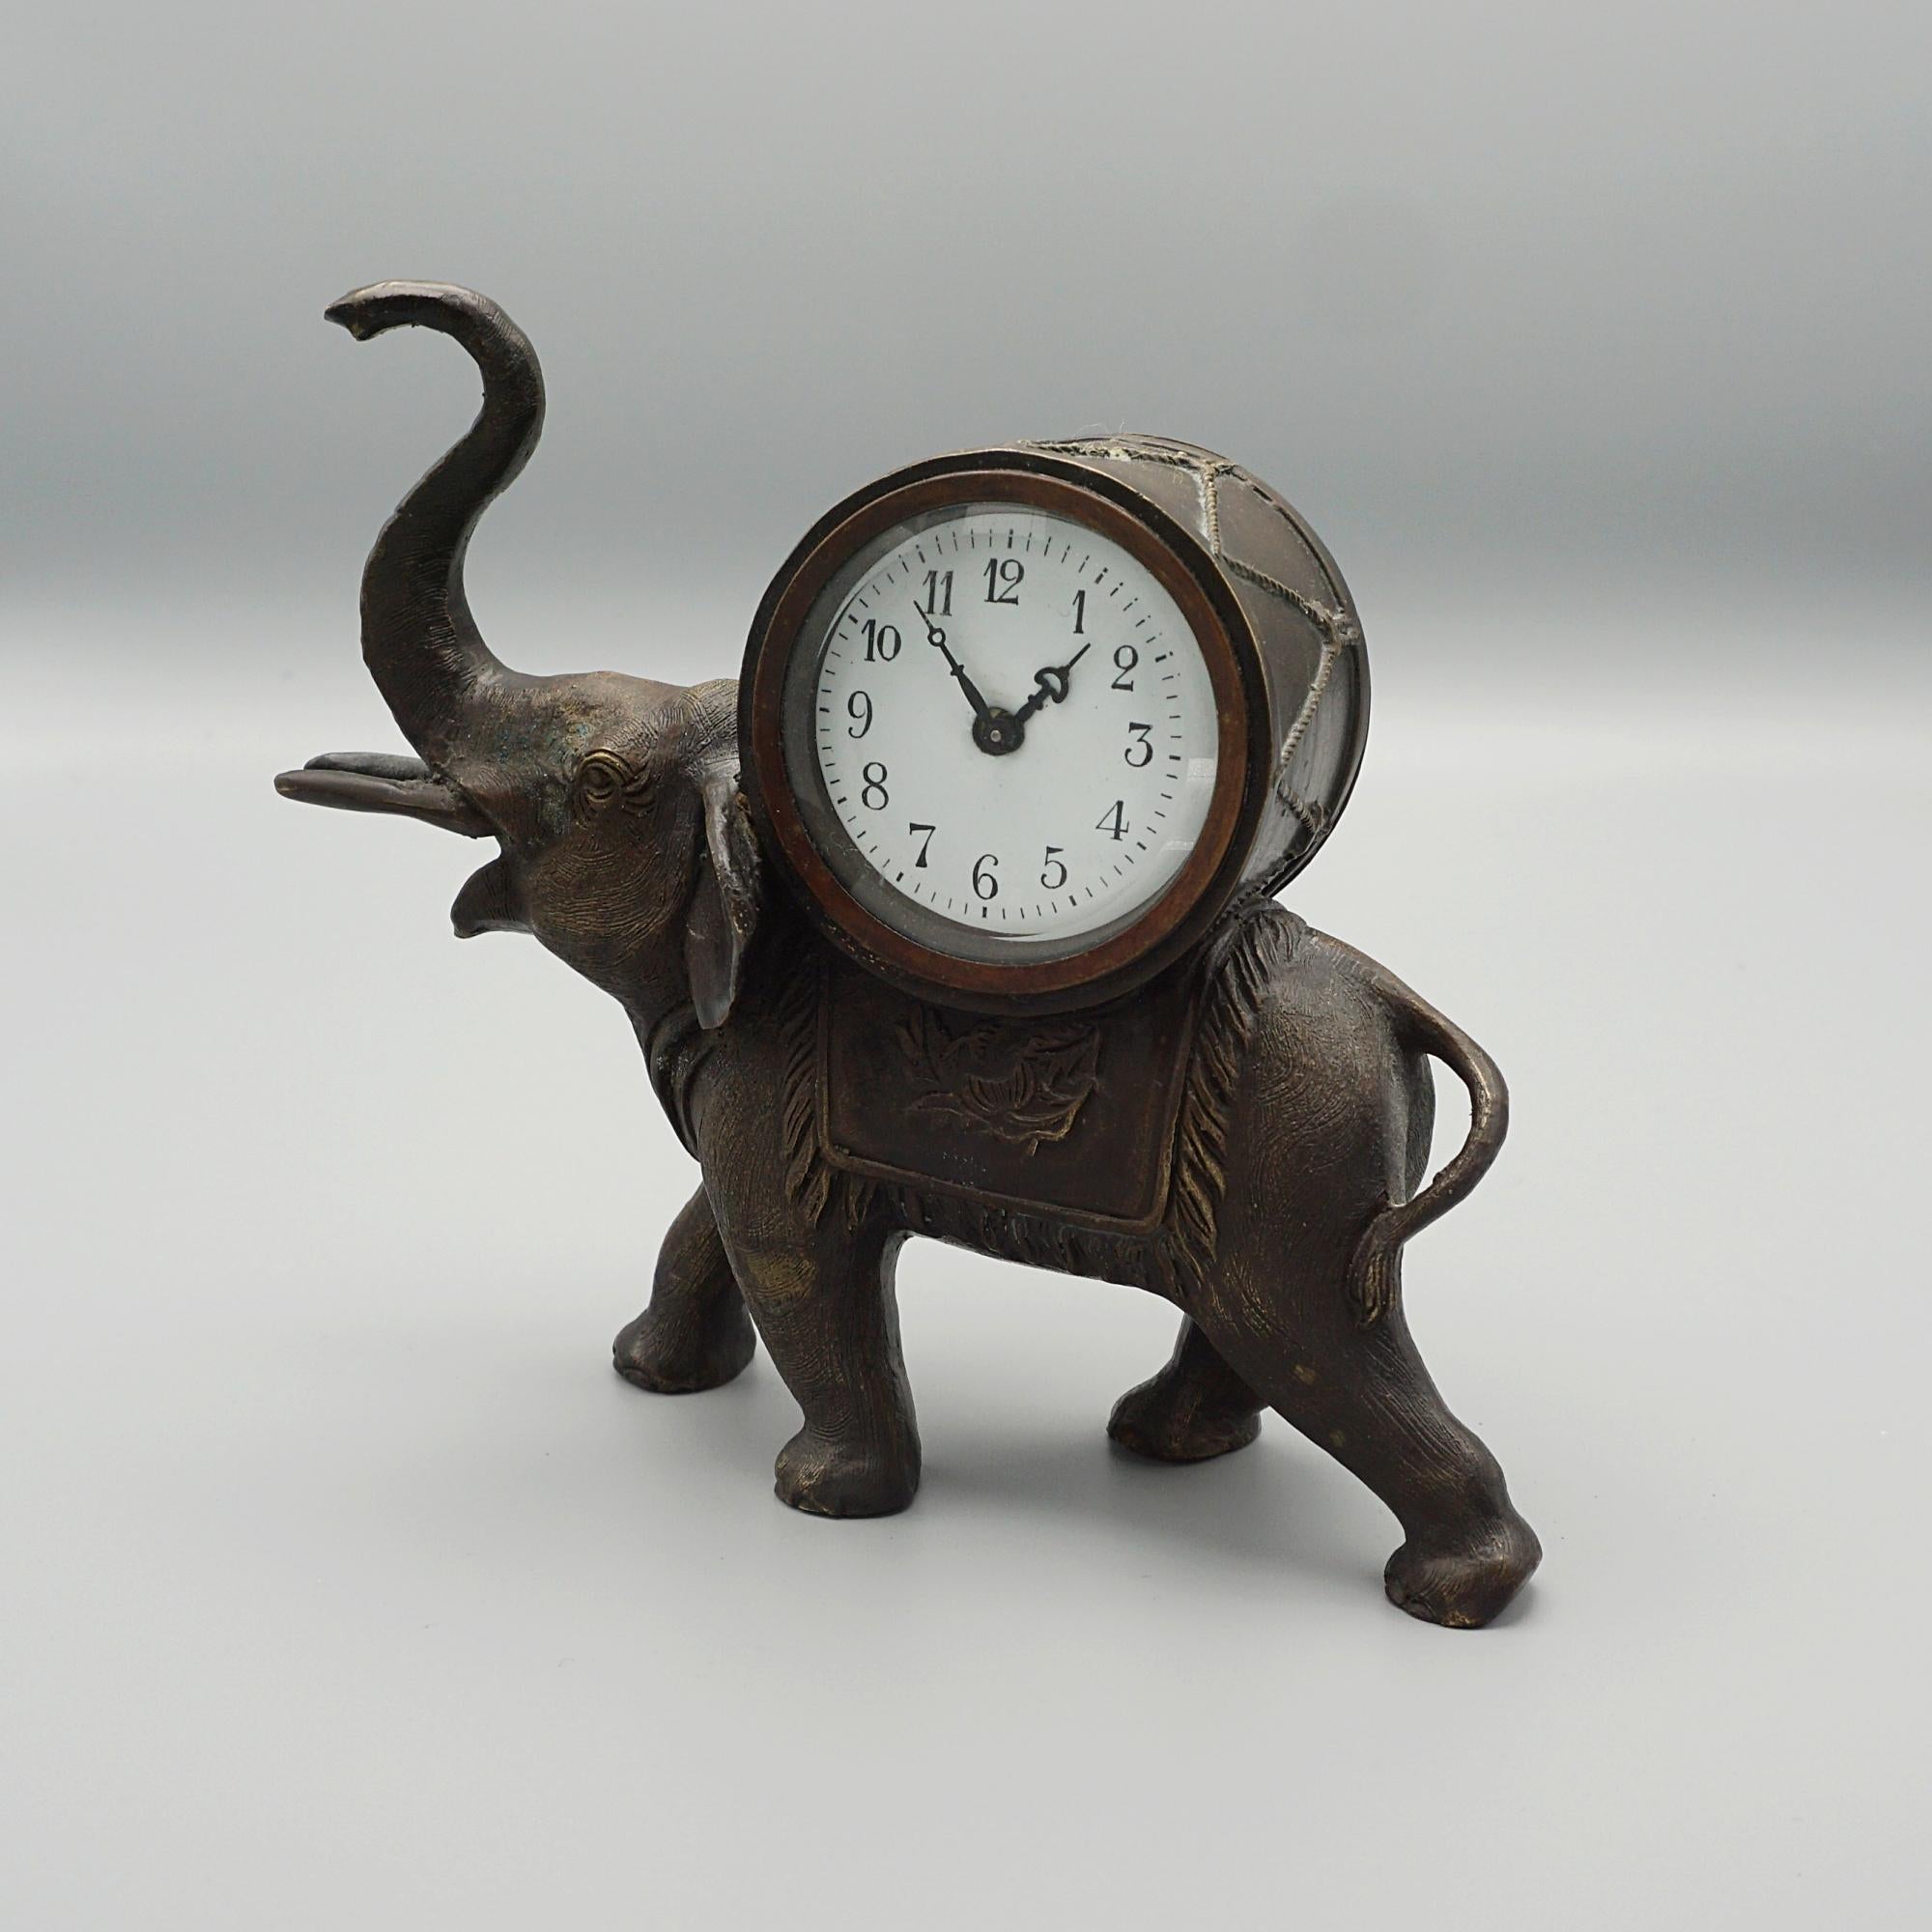 Eine Kaminsimsuhr aus dem späten 19. Jahrhundert in Form eines schreitenden Elefanten mit erhobenem Rüssel, der eine Uhr auf seinem Rücken trägt. Original 8-Tage-Bewegung.

Abmessungen: H 15,5cm B 18cm T 5cm

Herkunft: Französisch

Datum: CIRCA